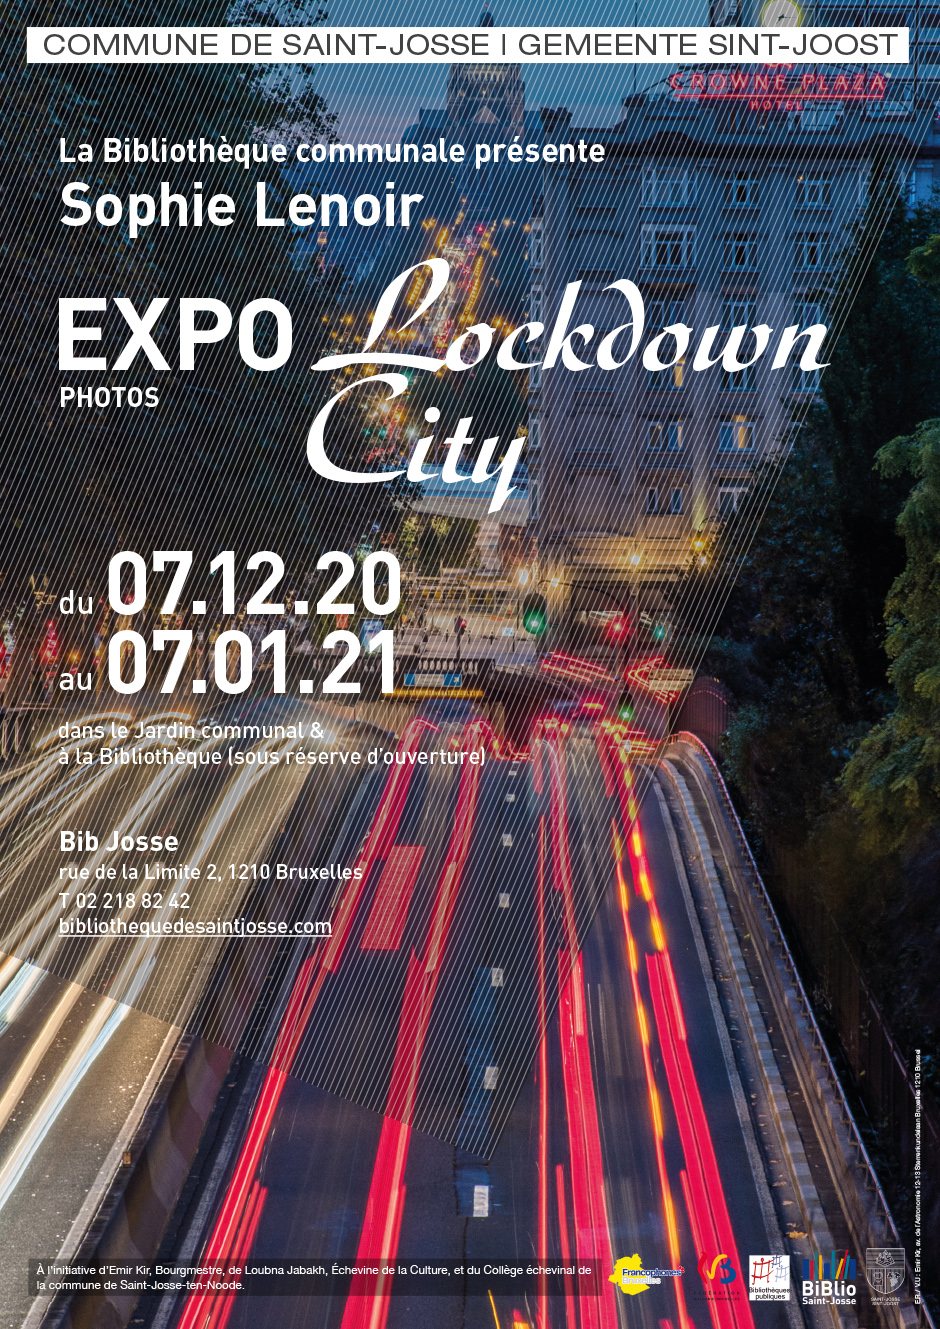 EXPO photos "Lockdown City" de Sophie Lenoir